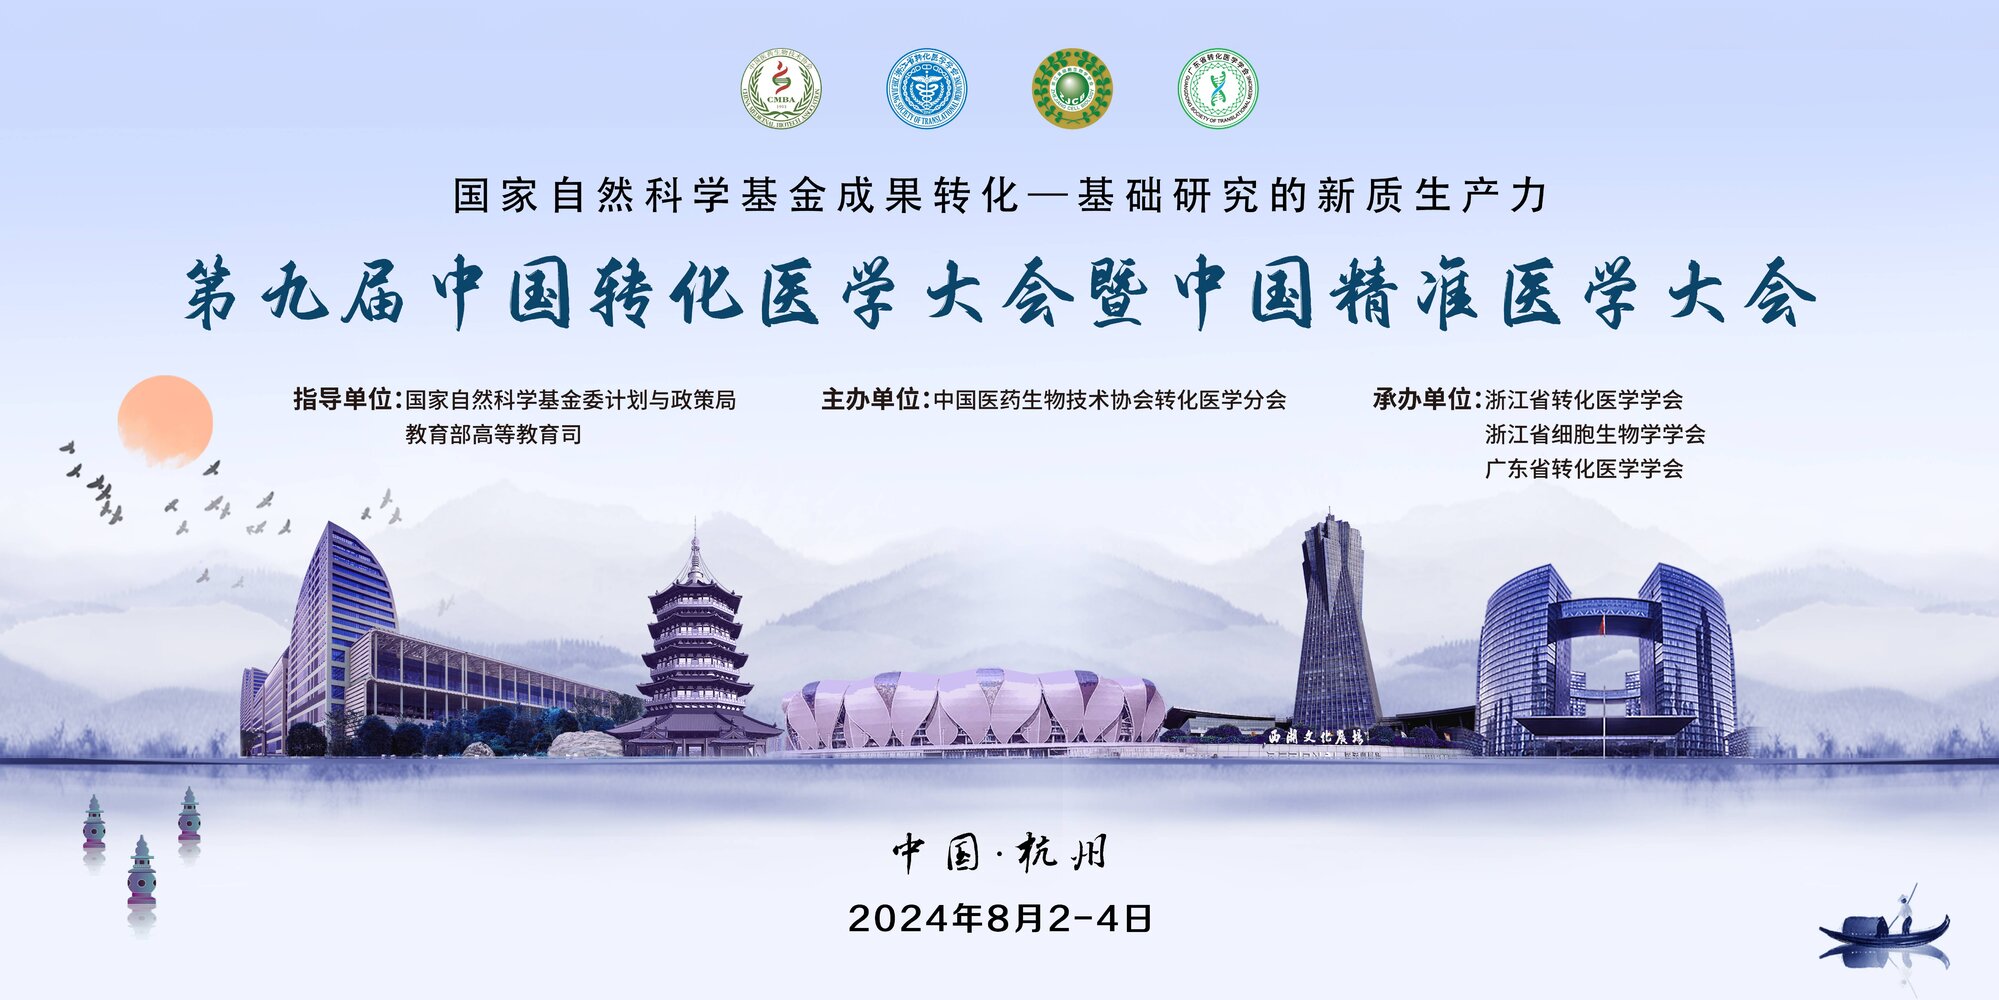 第九届中国转化医学大会暨中国精准医学大会第二轮通知